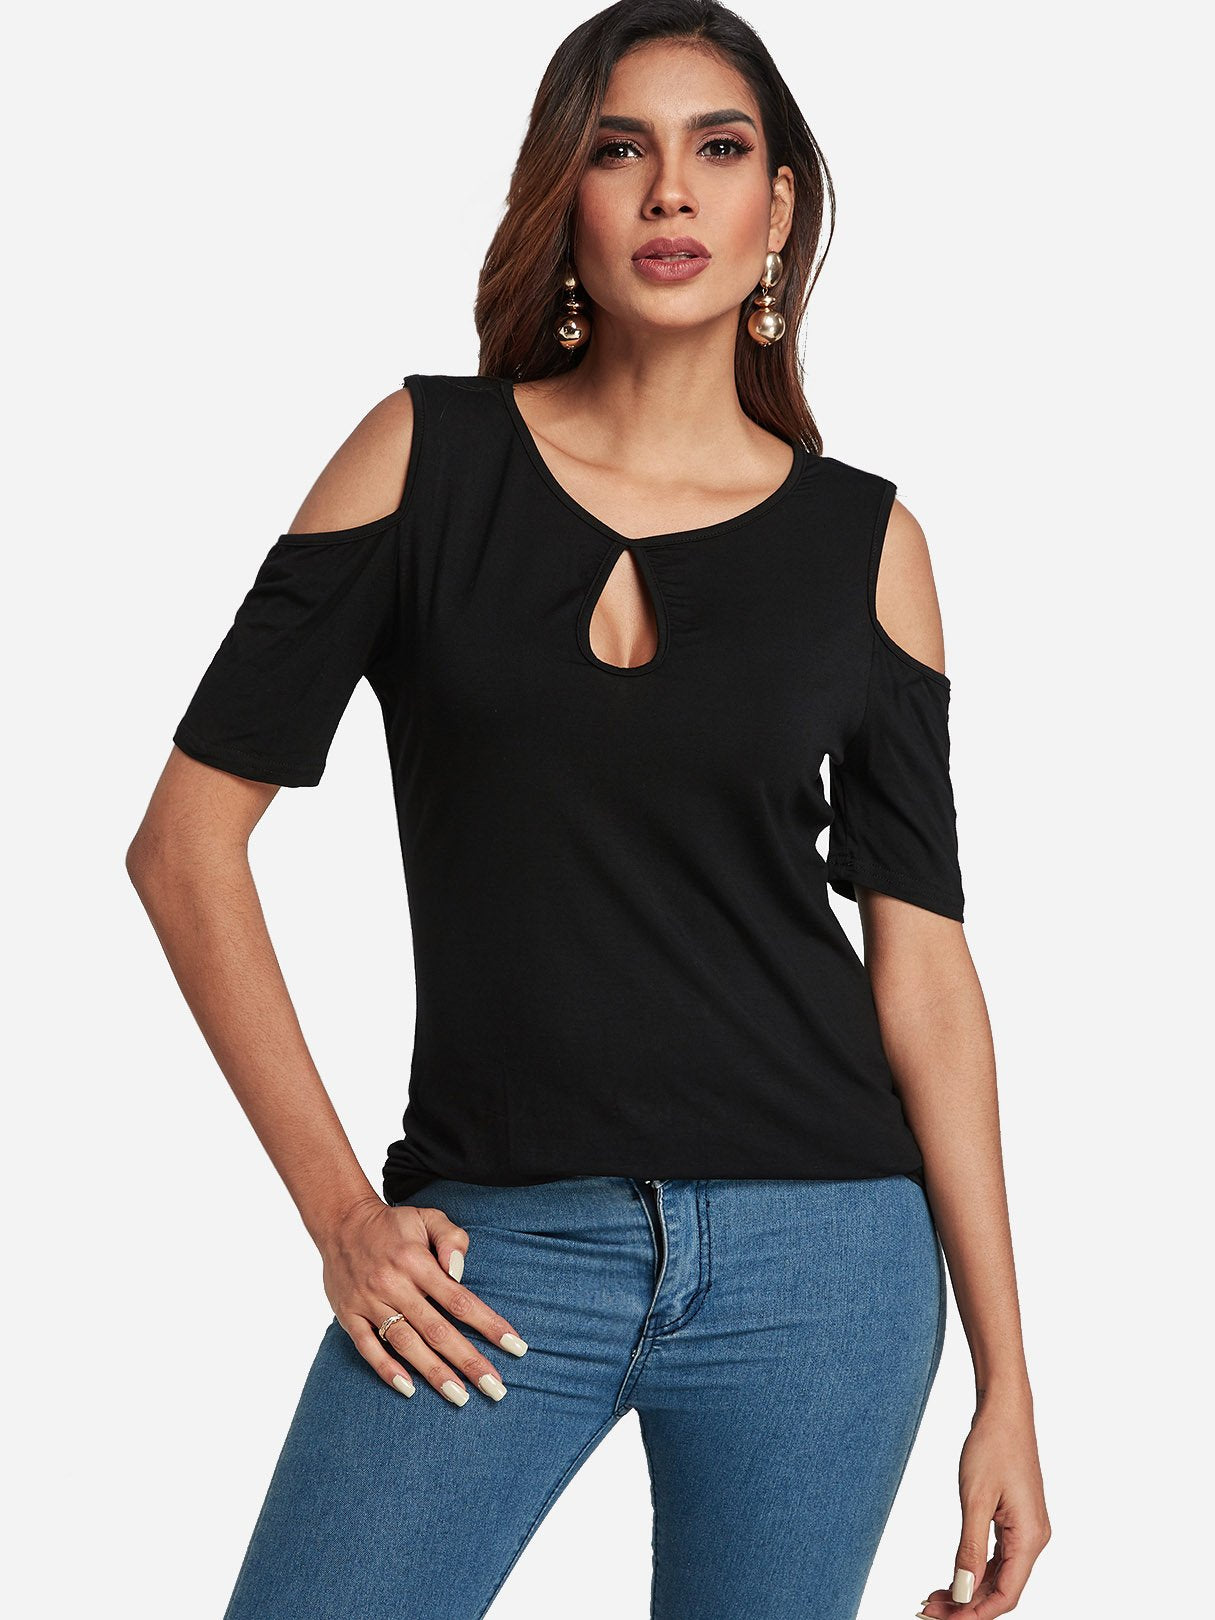 Wholesale Round Neck Cold Shoulder Plain Cut Out Short Sleeve Black T-Shirts